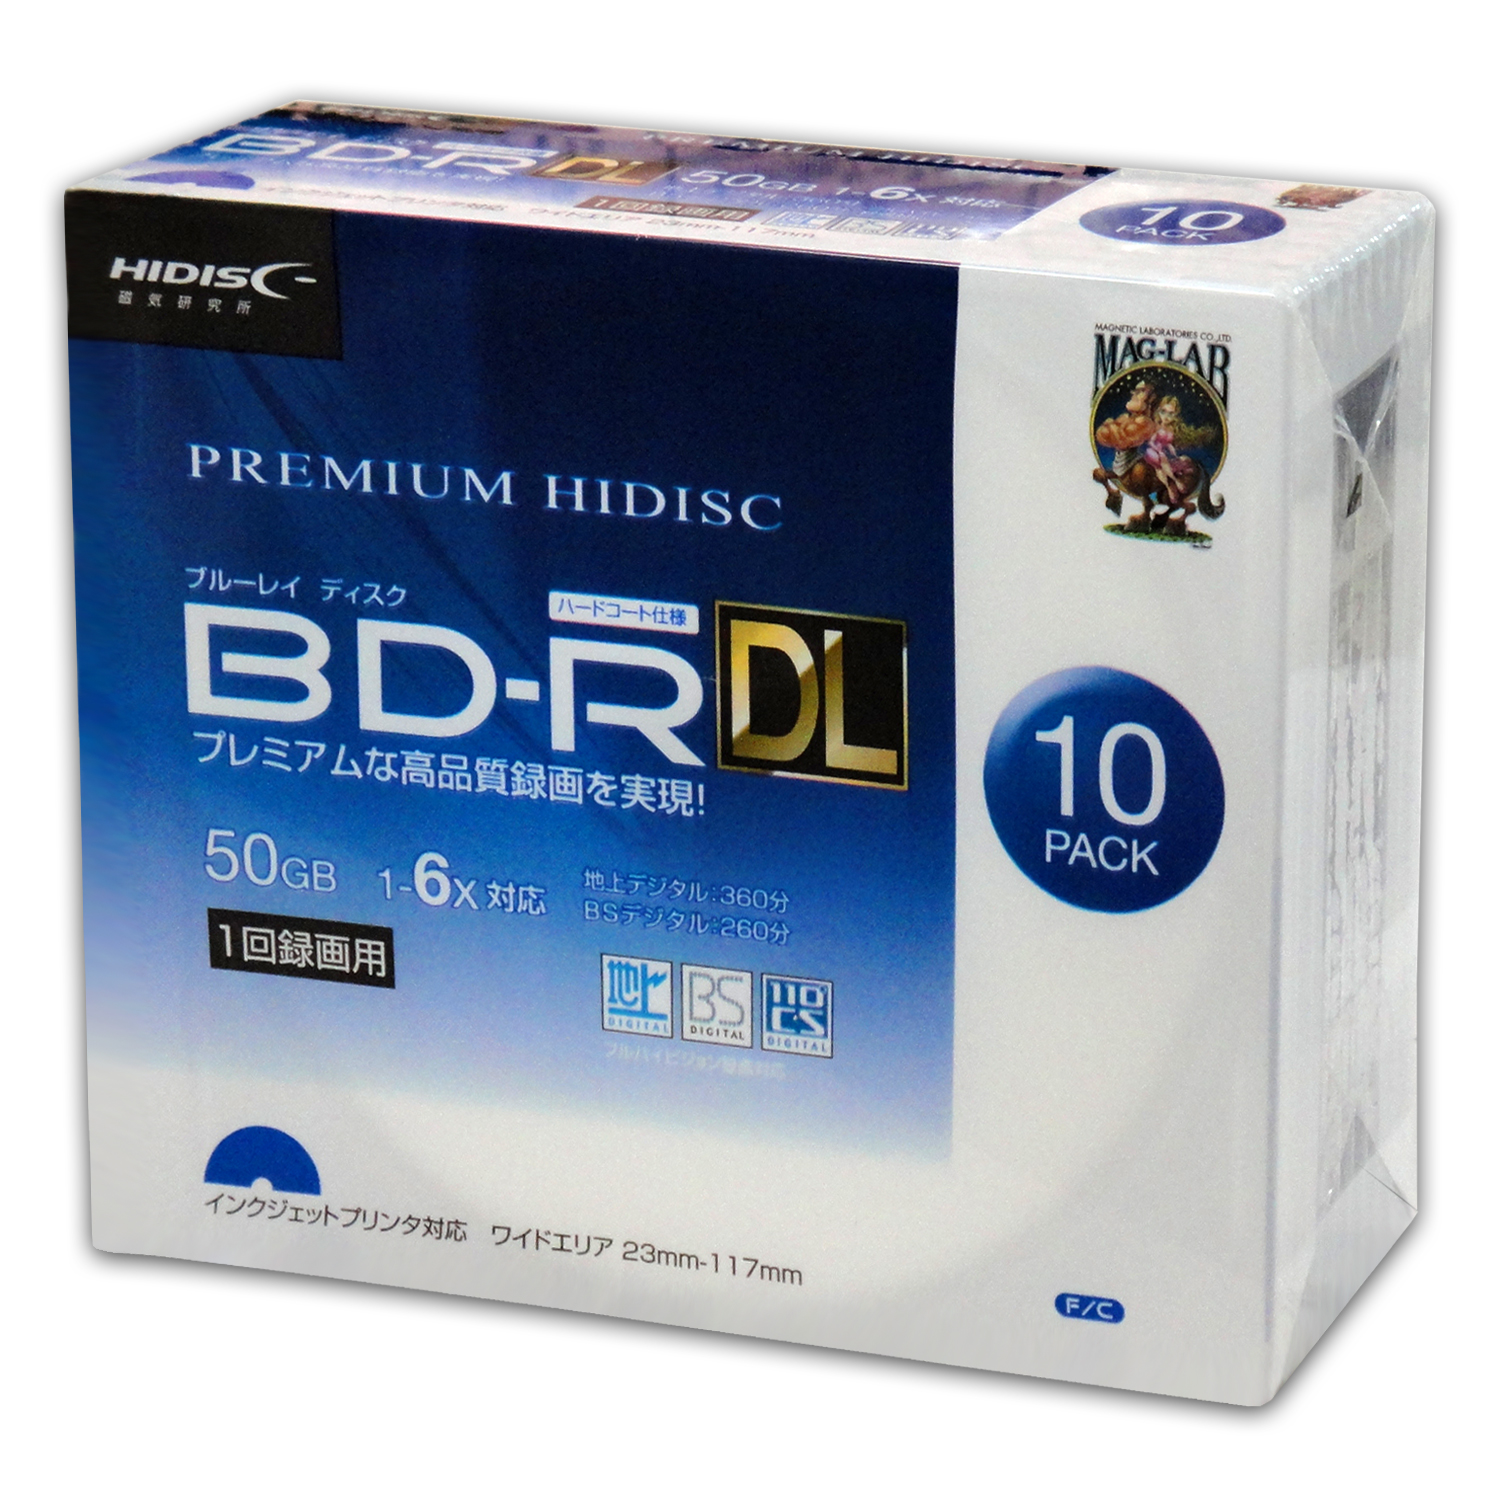 高級ブランド BD-R DL メディア 録画用 HI-DISC ハイディスク 6倍速 50枚パック 50GB ホワイトプリンタブル  HDBDRDL260RP50 宅